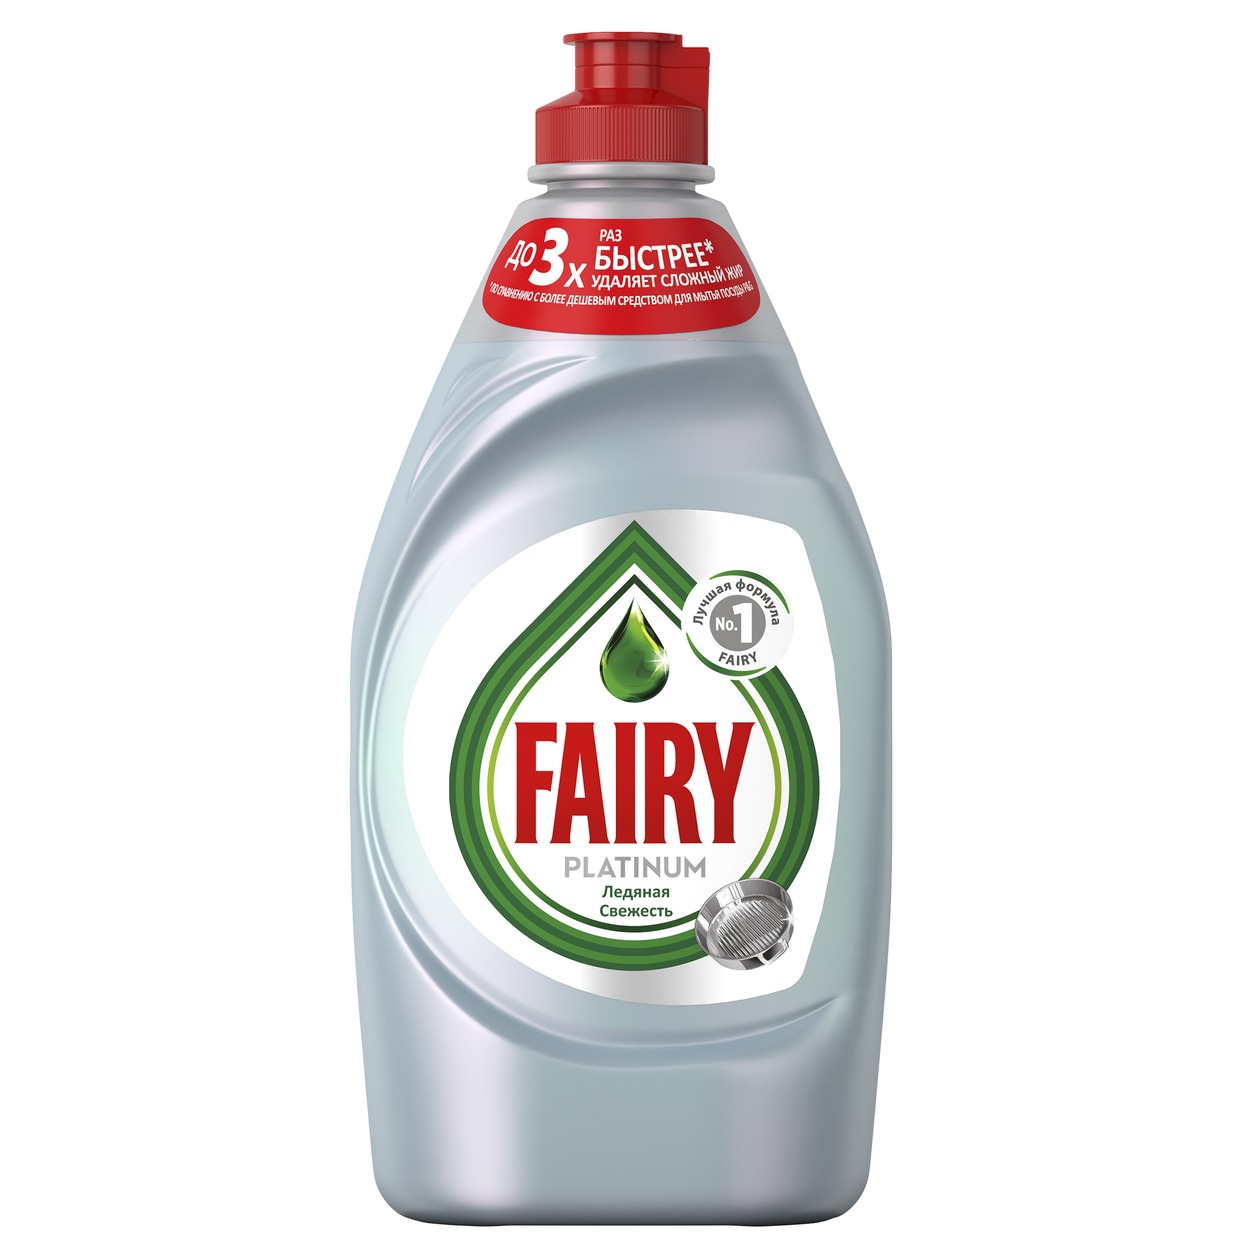 Средство для мытья посуды Fairy Platinum, 430 мл по акции в Пятерочке